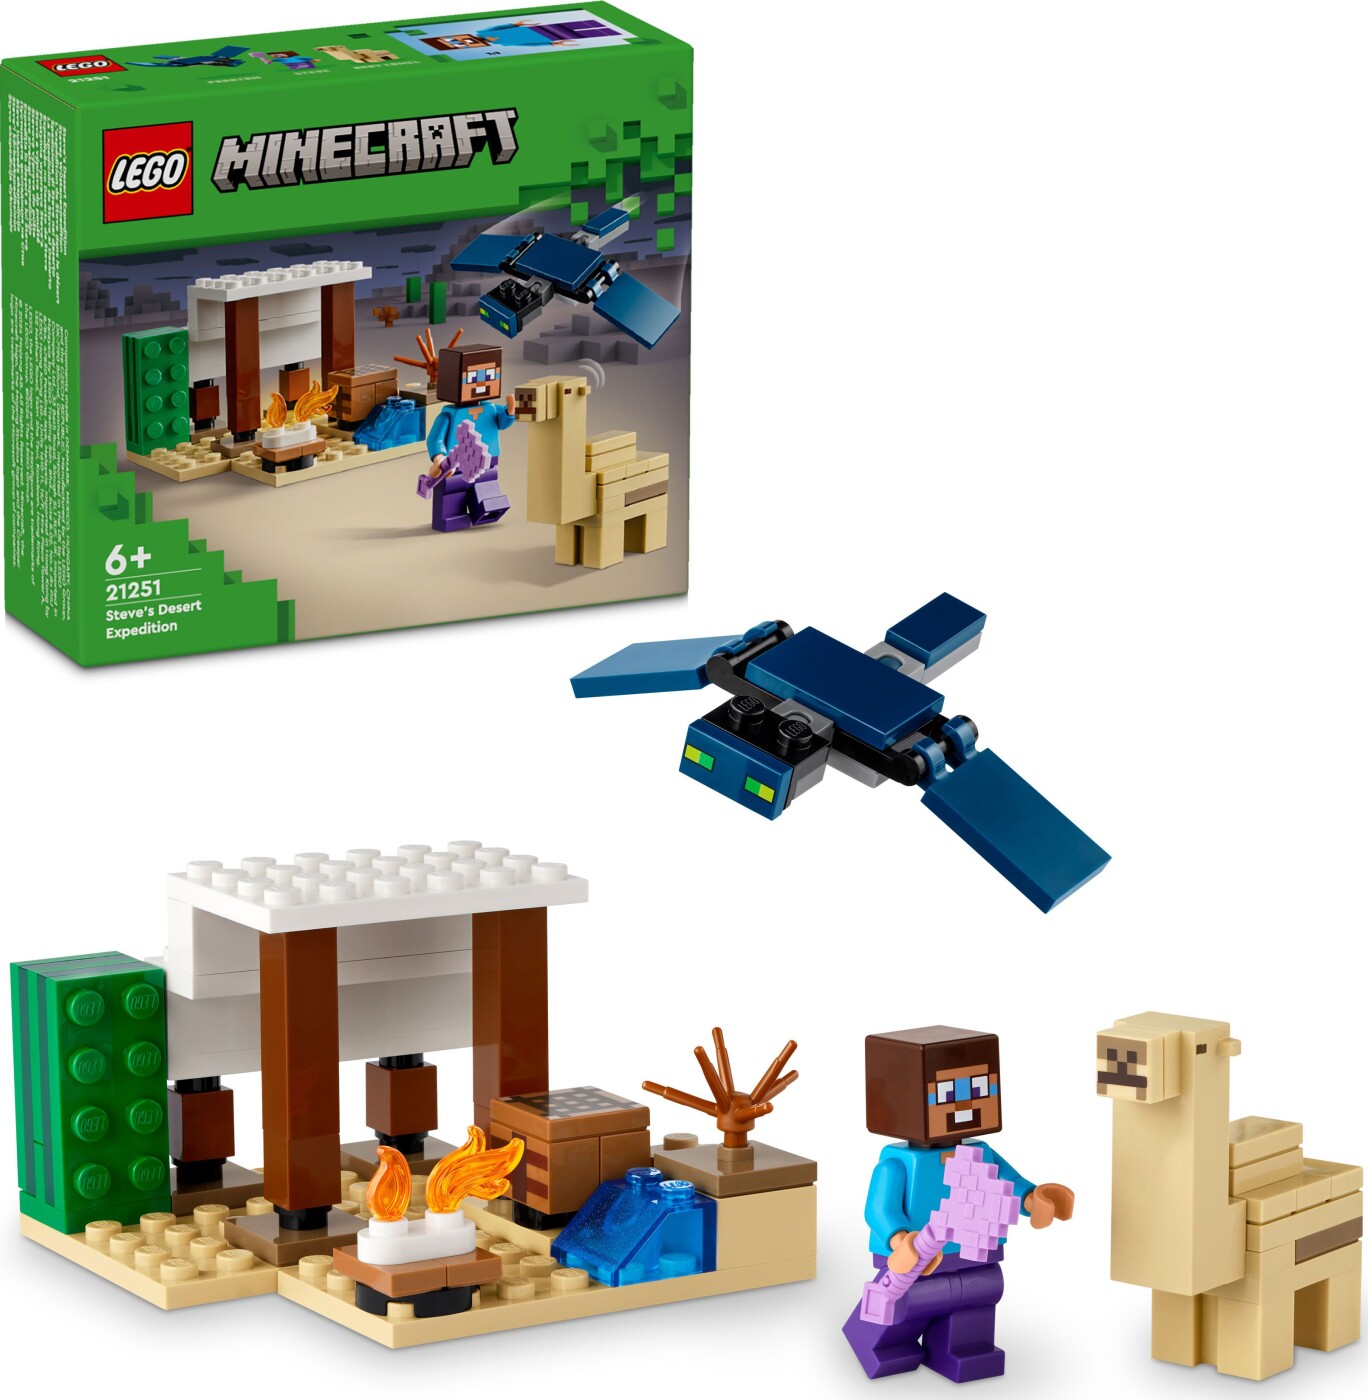 Billede af Lego Minecraft - Steves ørkenekspedition - 21251